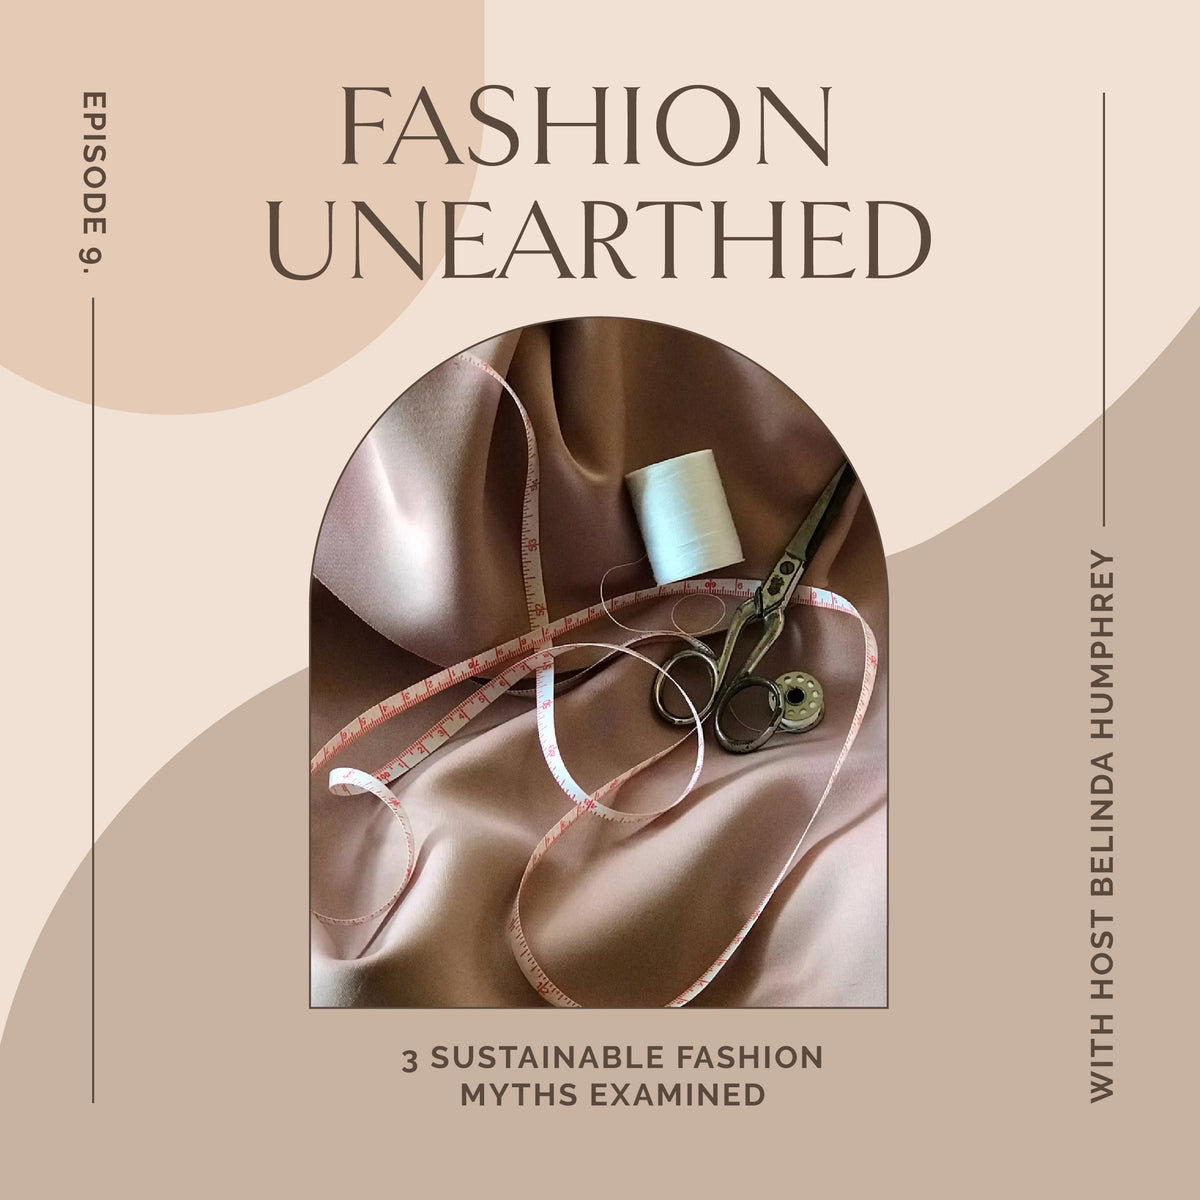 Episode 9: 3 Sustainable Fashion myths examined